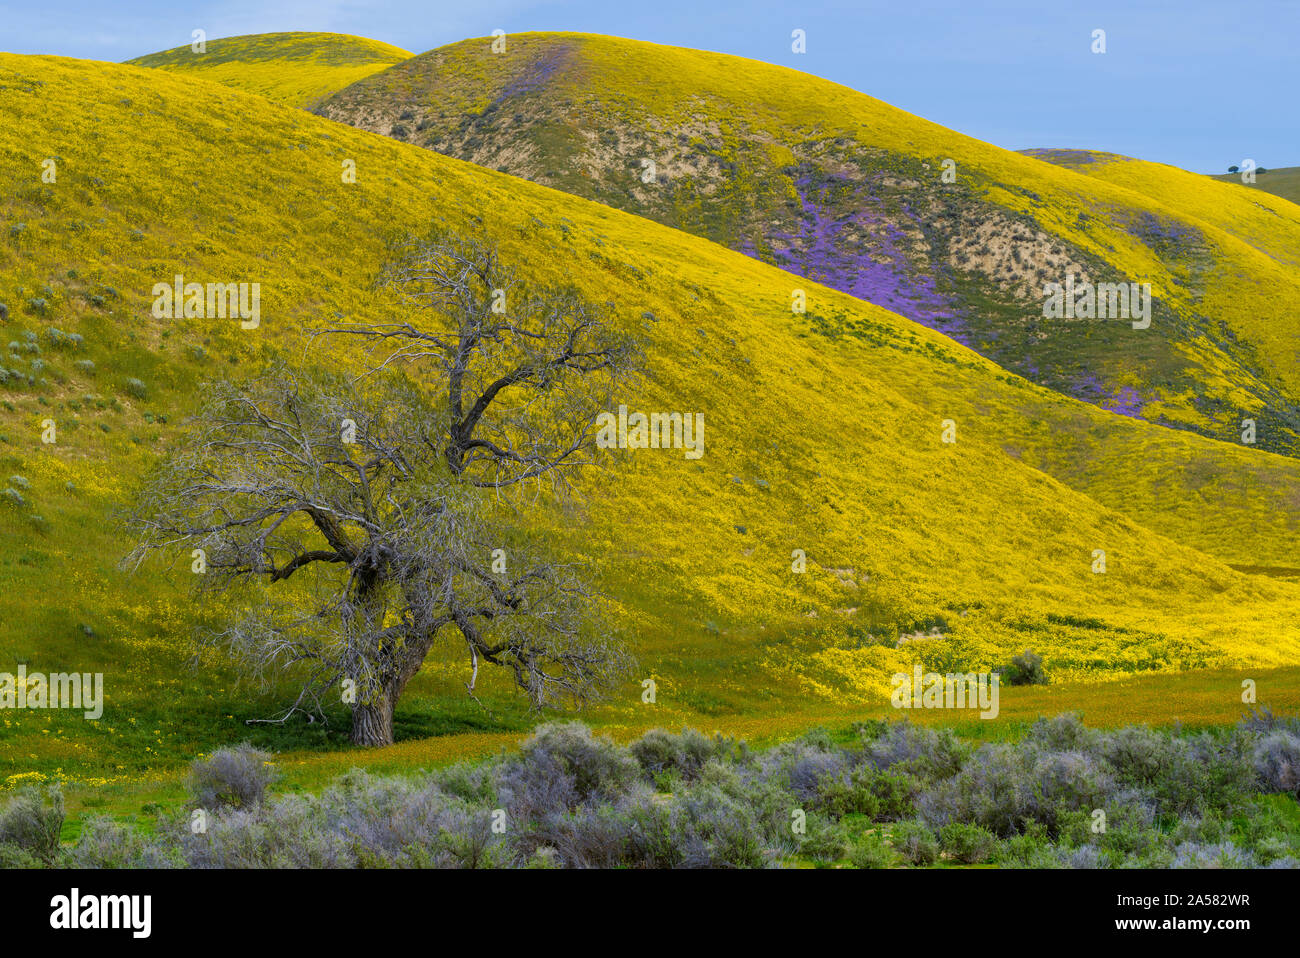 Paysage de collines et de fleurs sauvages jaunes, gamme Temblor, Carrizo Plain National Monument (Californie, USA Banque D'Images